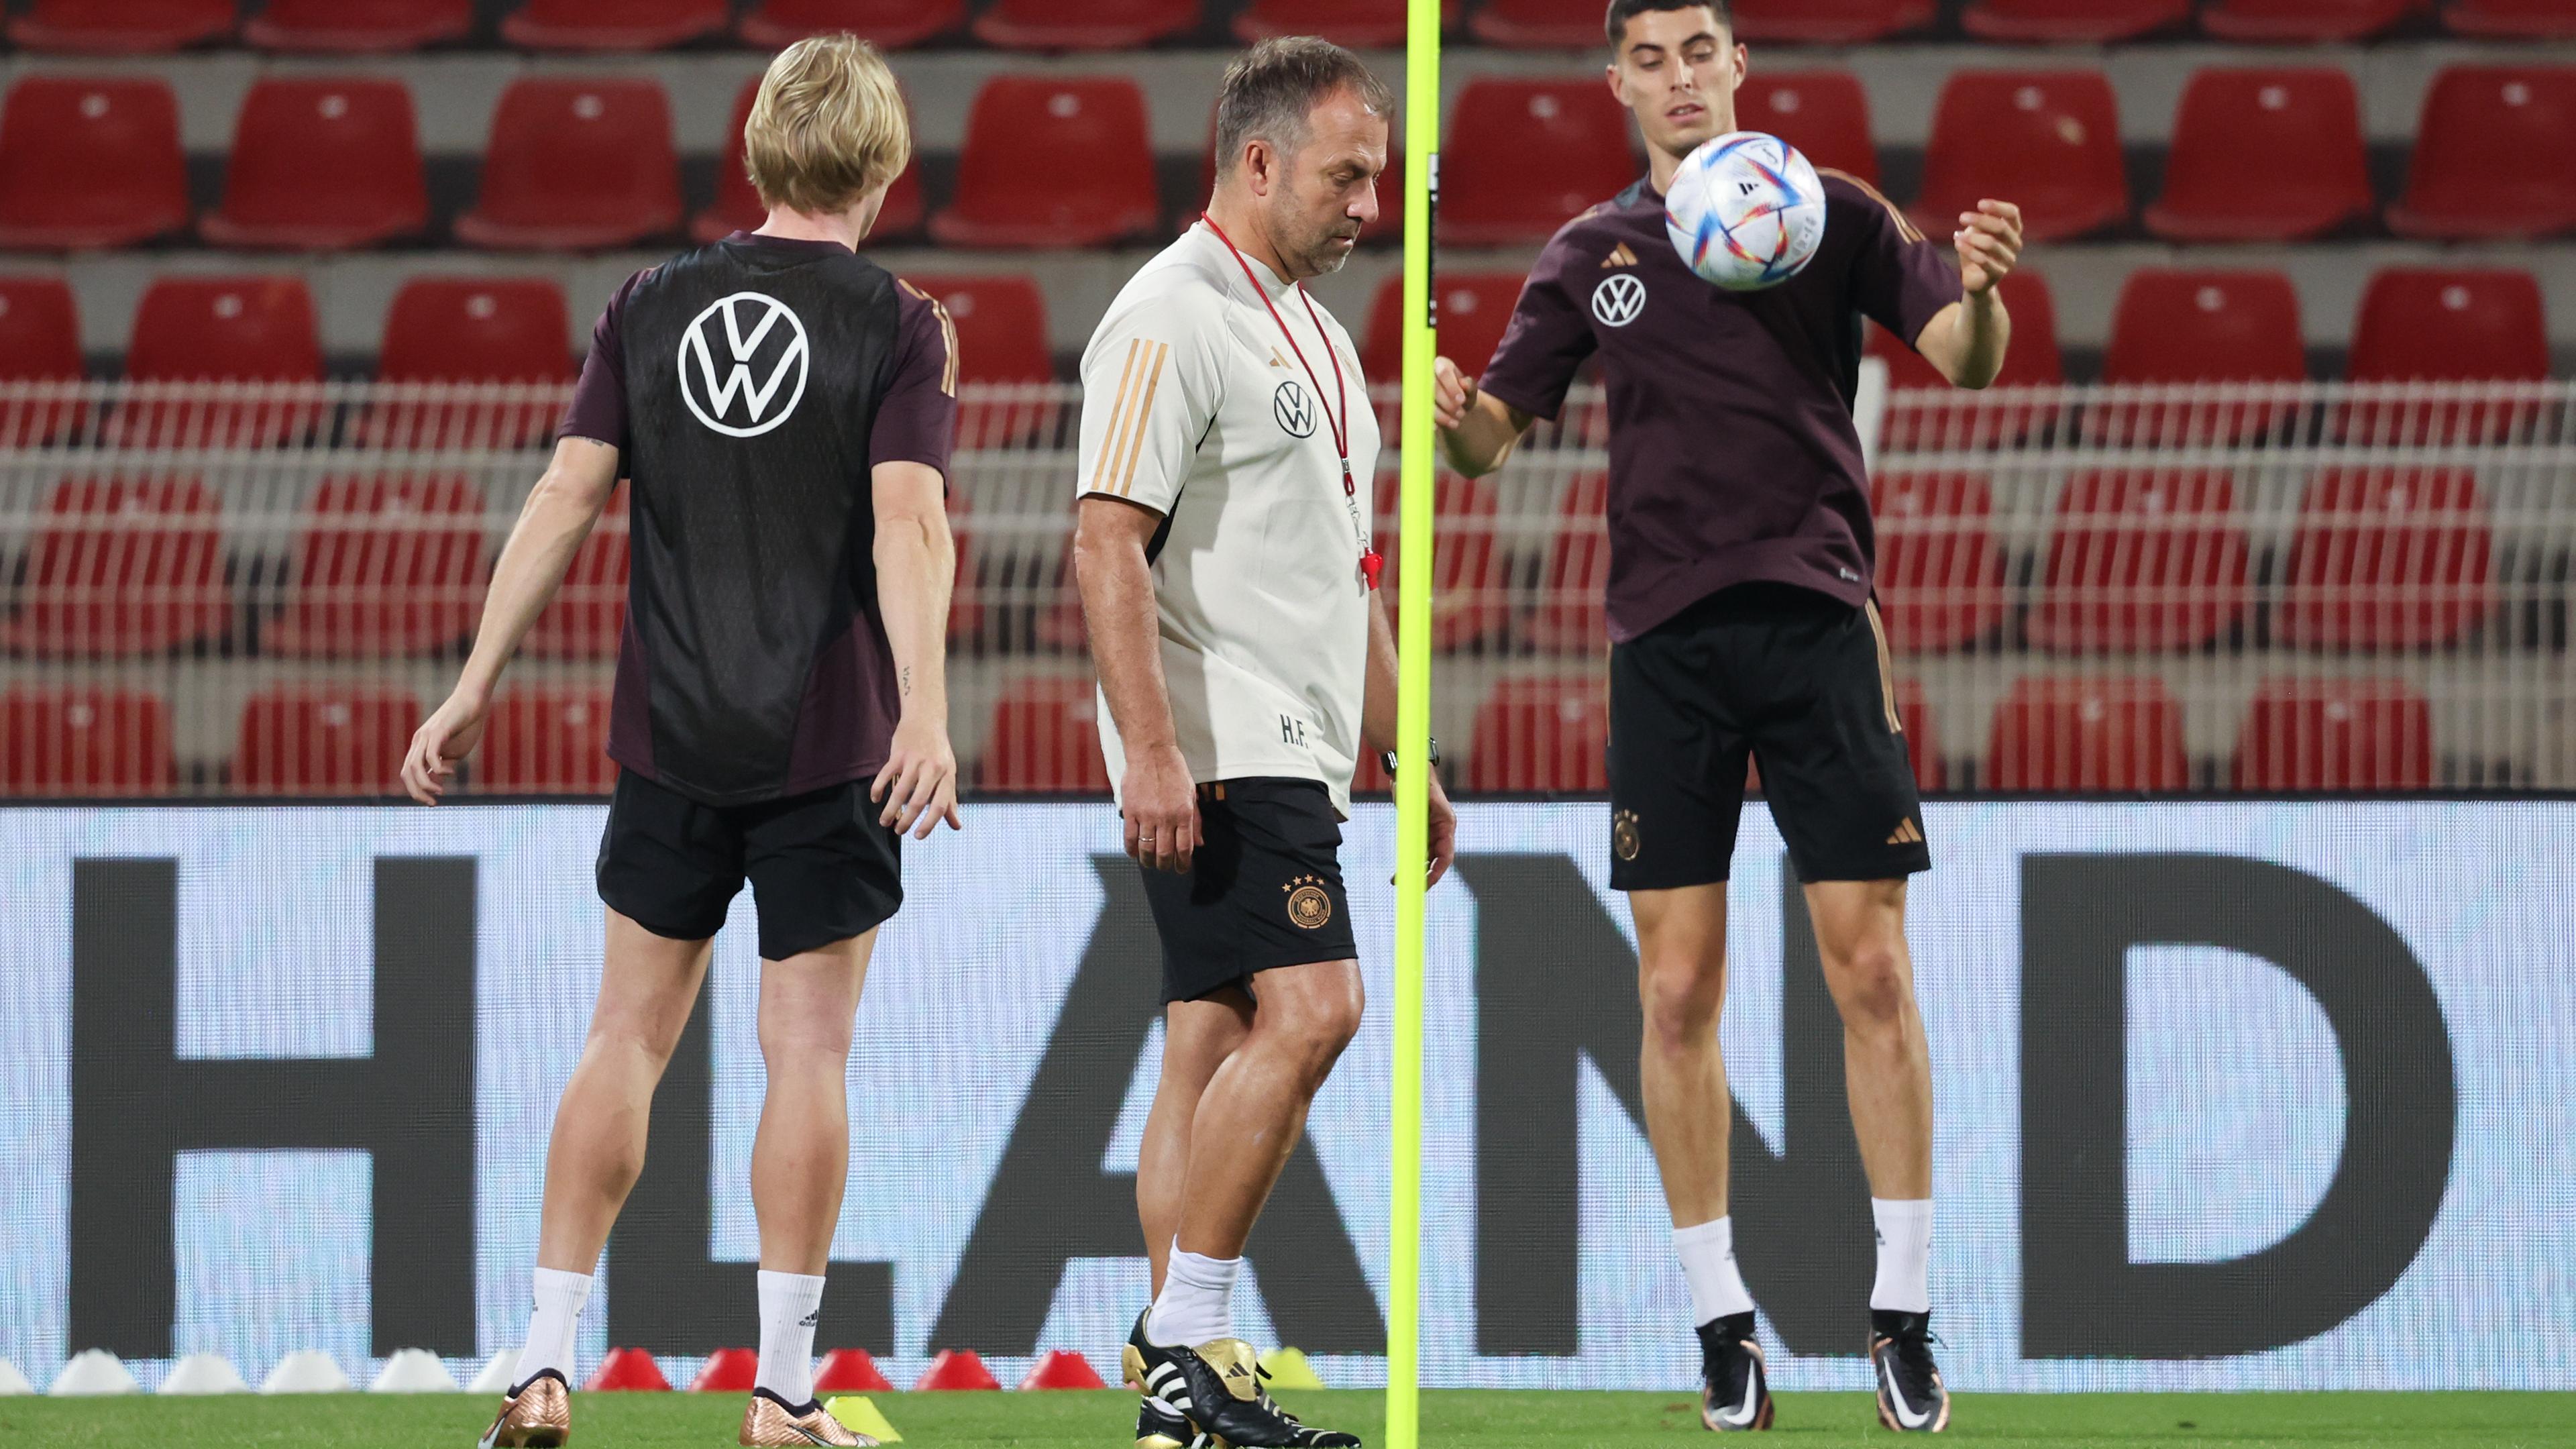 Oman, Maskat: Bundestrainer Hansi Flick (M) leitet das Training, während sich Kai Havertz (r) und Julian Brandt den Ball zuspielen.